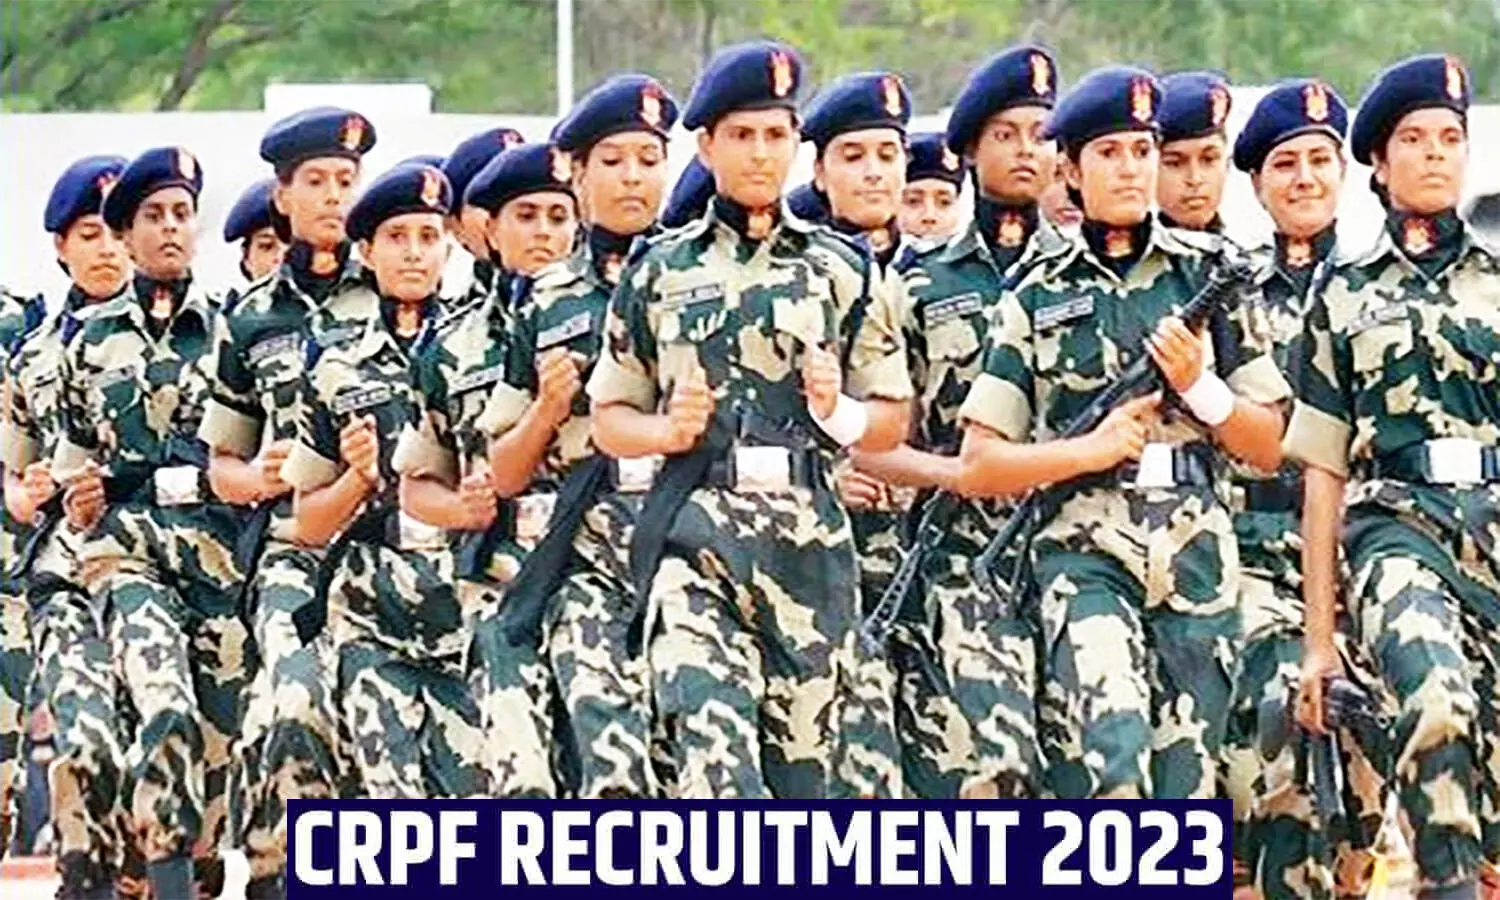 CRPF Recruitment 2023: सीआरपीएफ में 9 हजार से अधिक पदों पर निकली भर्ती, 10वीं पास पुरुष व महिला कर सकते हैं अप्लाई